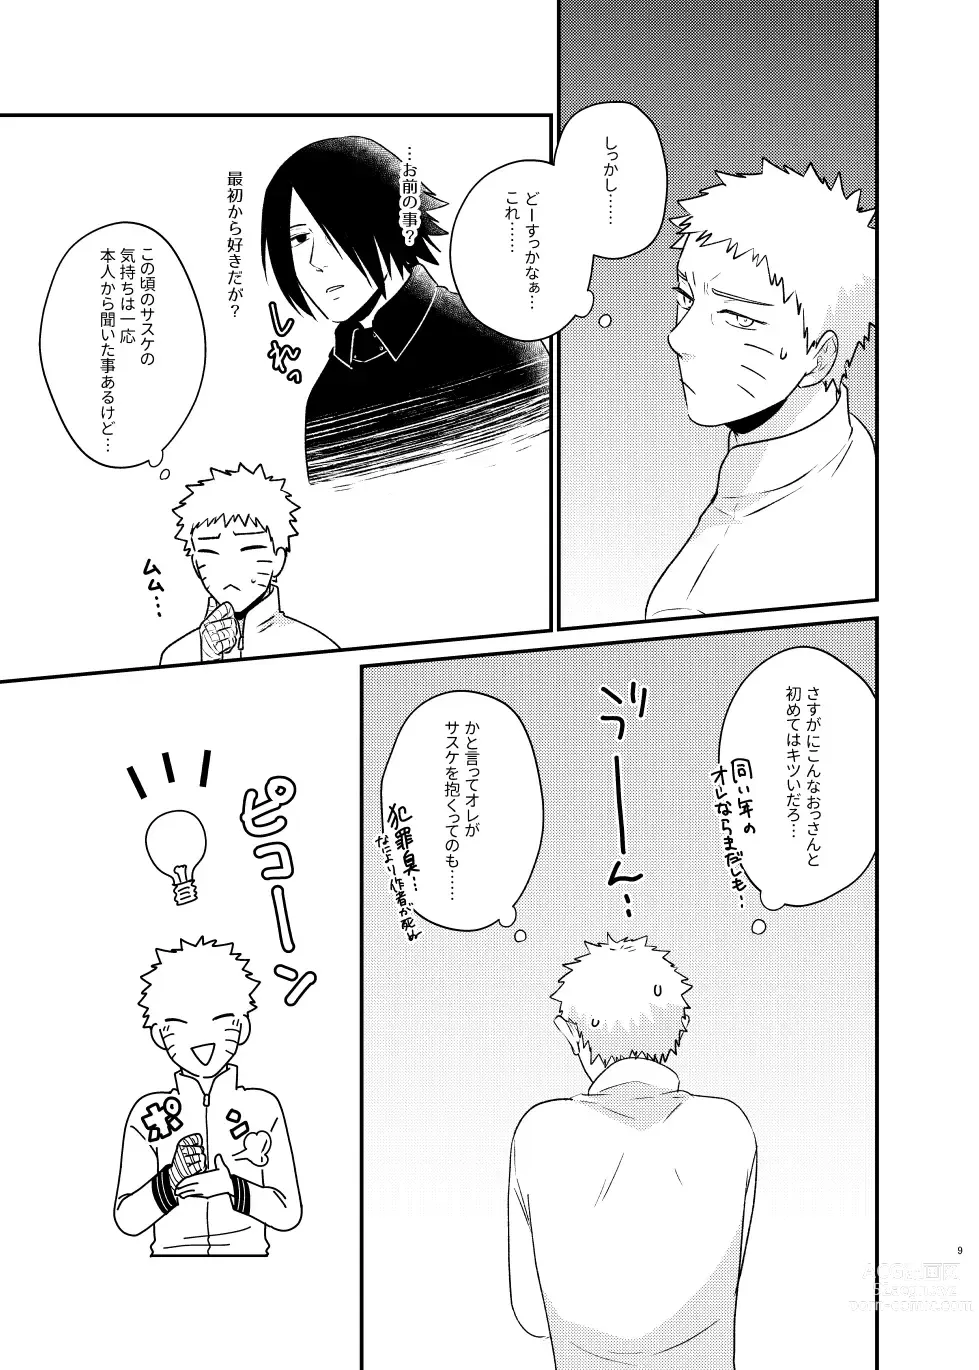 Page 6 of doujinshi Gochamaze 37 ~Rei no Heya ni Tojikomete Okimashita~